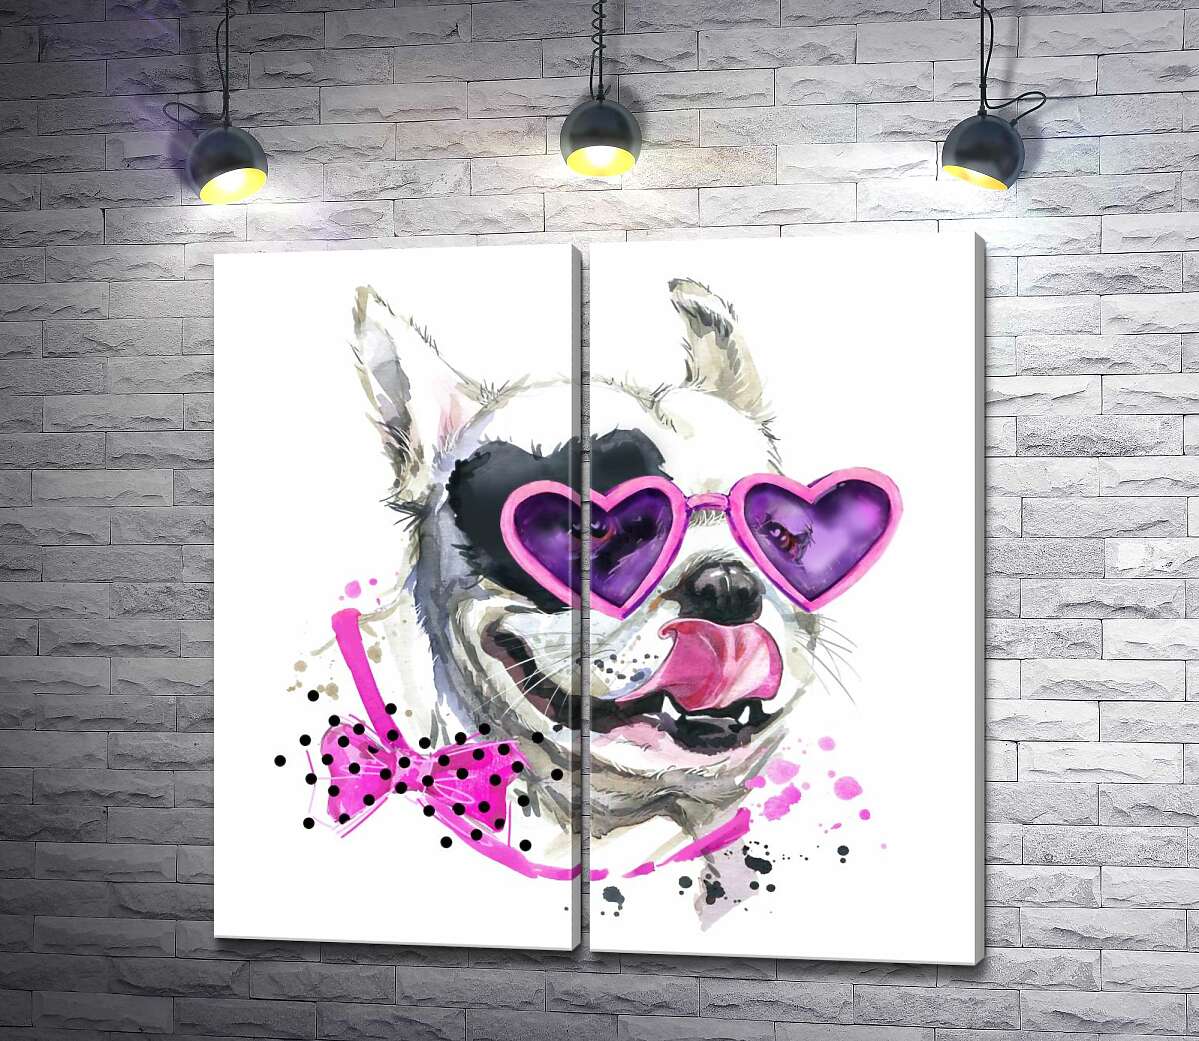 модульная картина Белая собака с черным пятном-сердцем на глазу  и в розовых очках